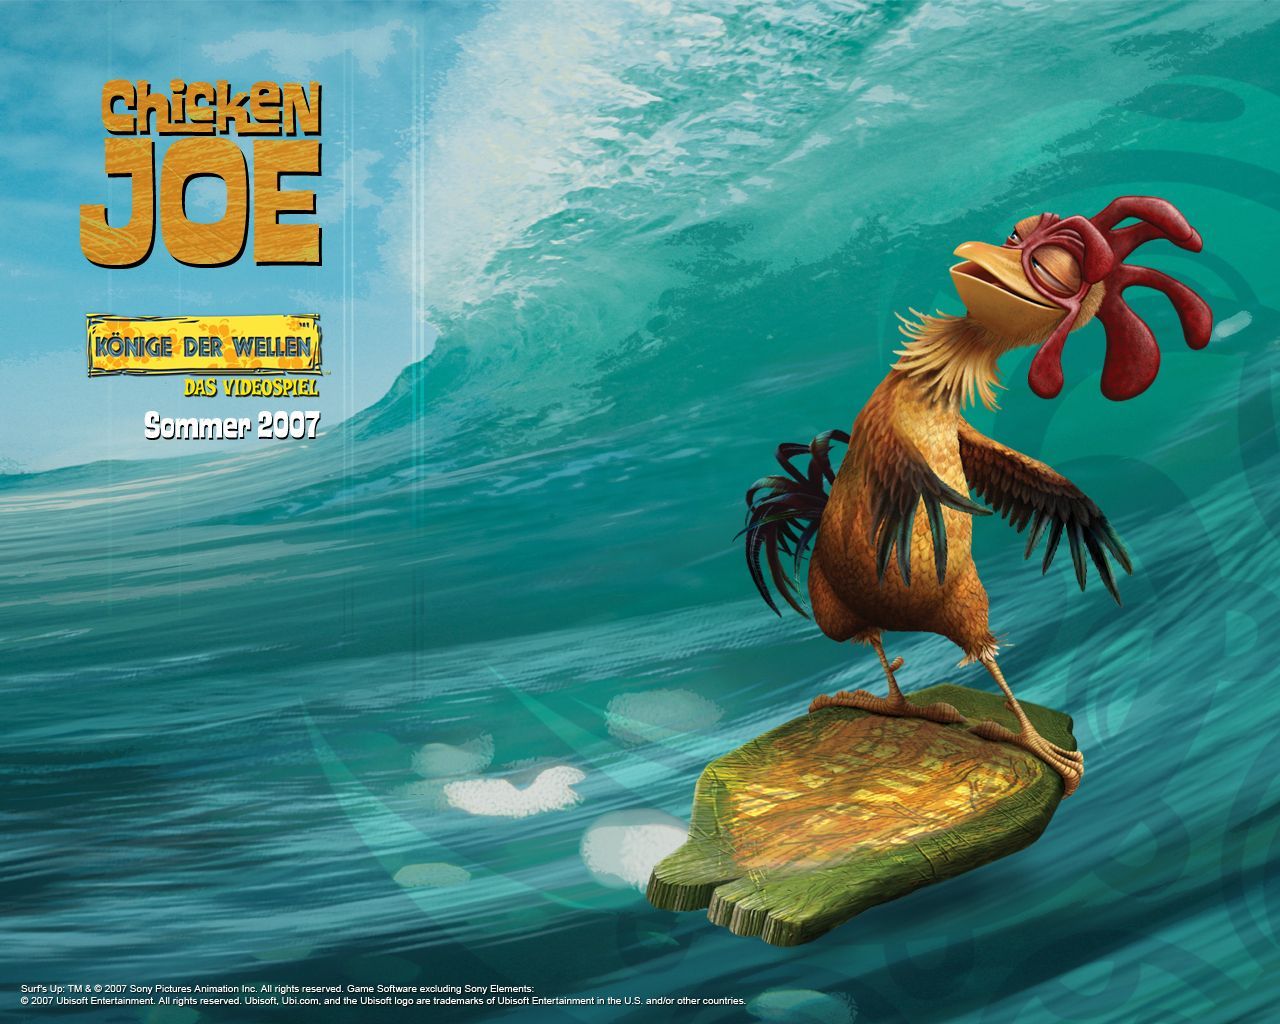 Surf's Up Wallpaper: Joe the chicken. Surfs up movie, Surfs up, Surfs